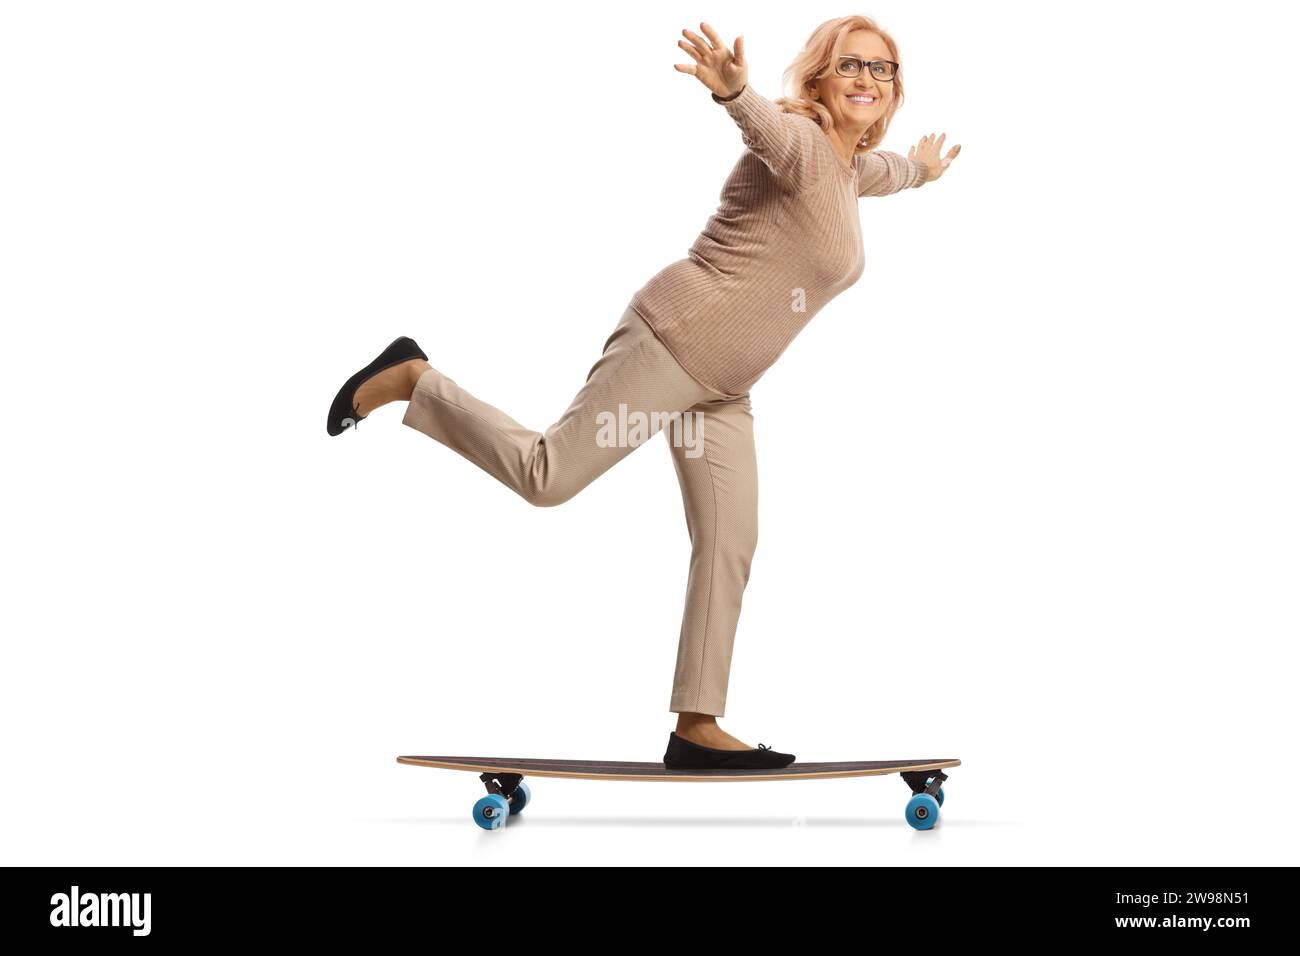 Aufnahme in voller Länge einer Frau mittleren Alters, die auf einem Skateboard fährt und Arme ausbreitet, isoliert auf weißem Hintergrund Stockfoto